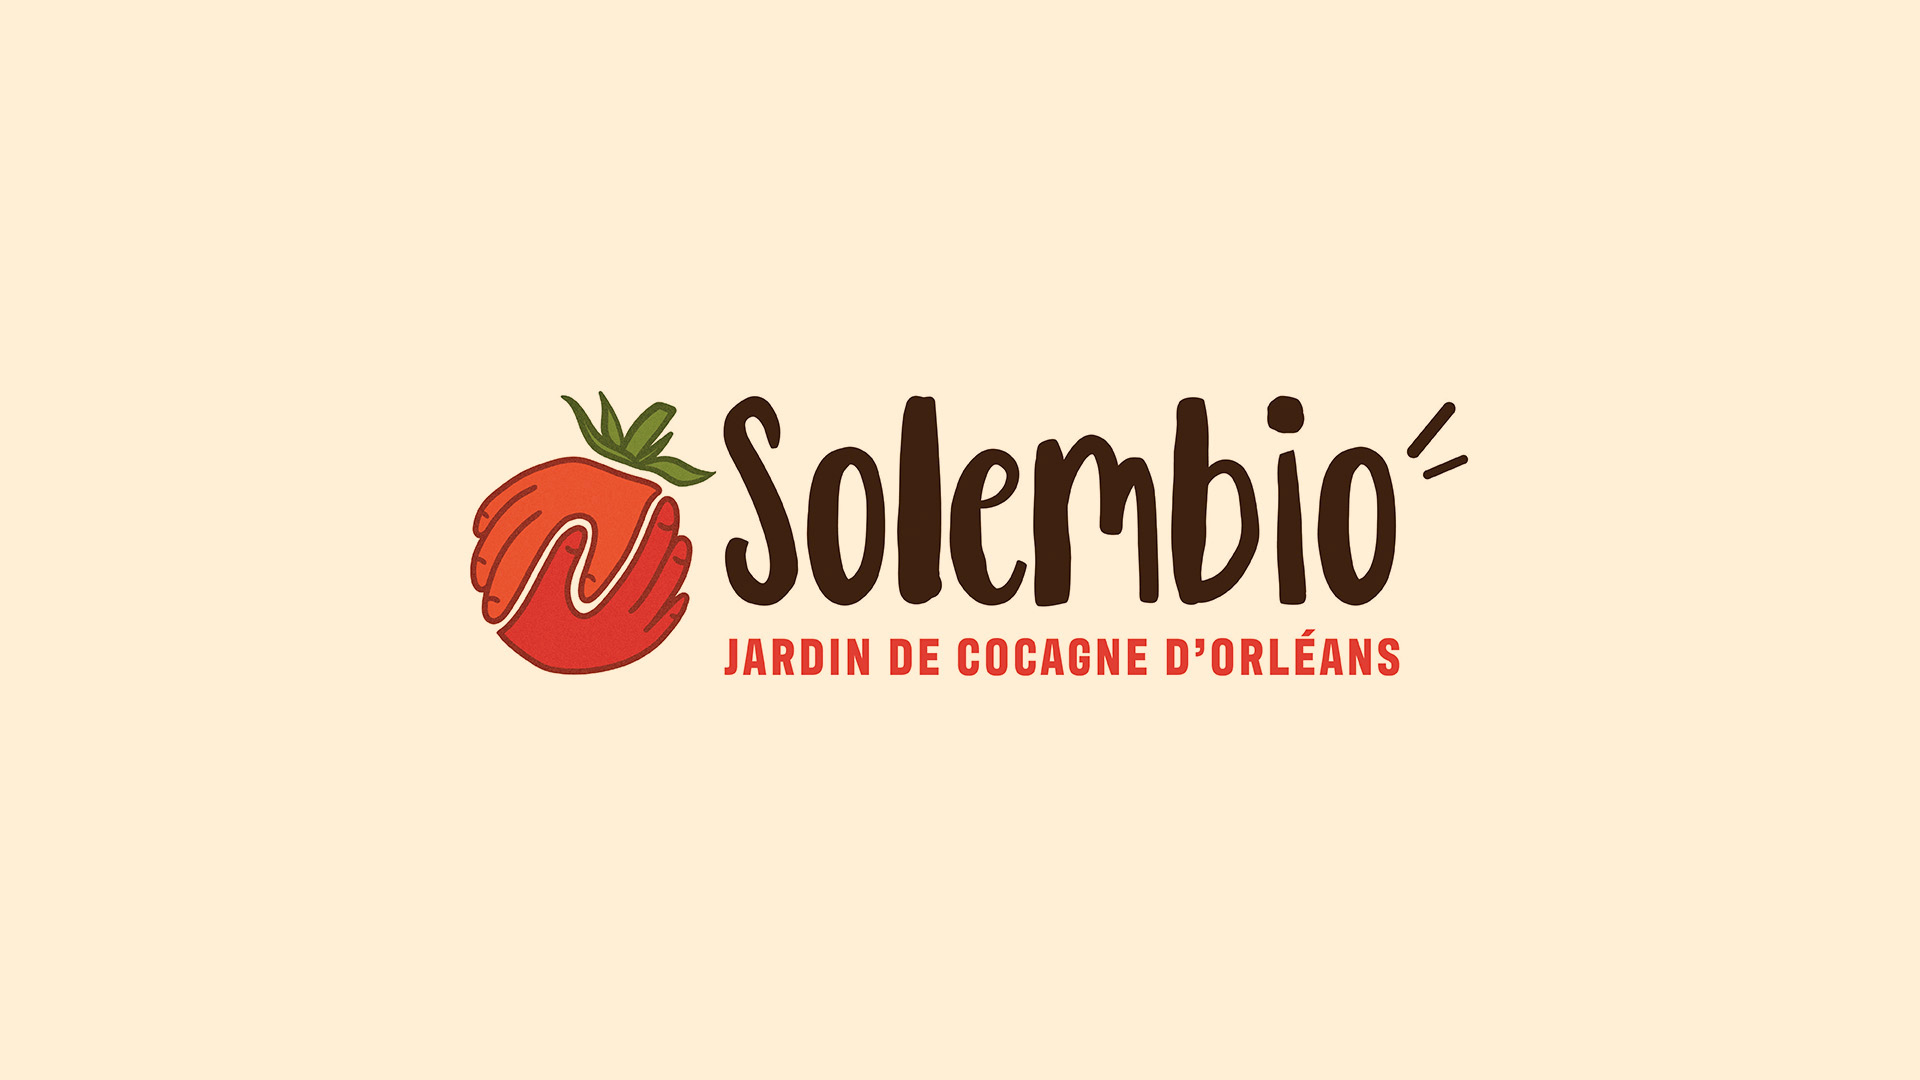 Logo de Solembio, les jardins de cocagne d'Orléans